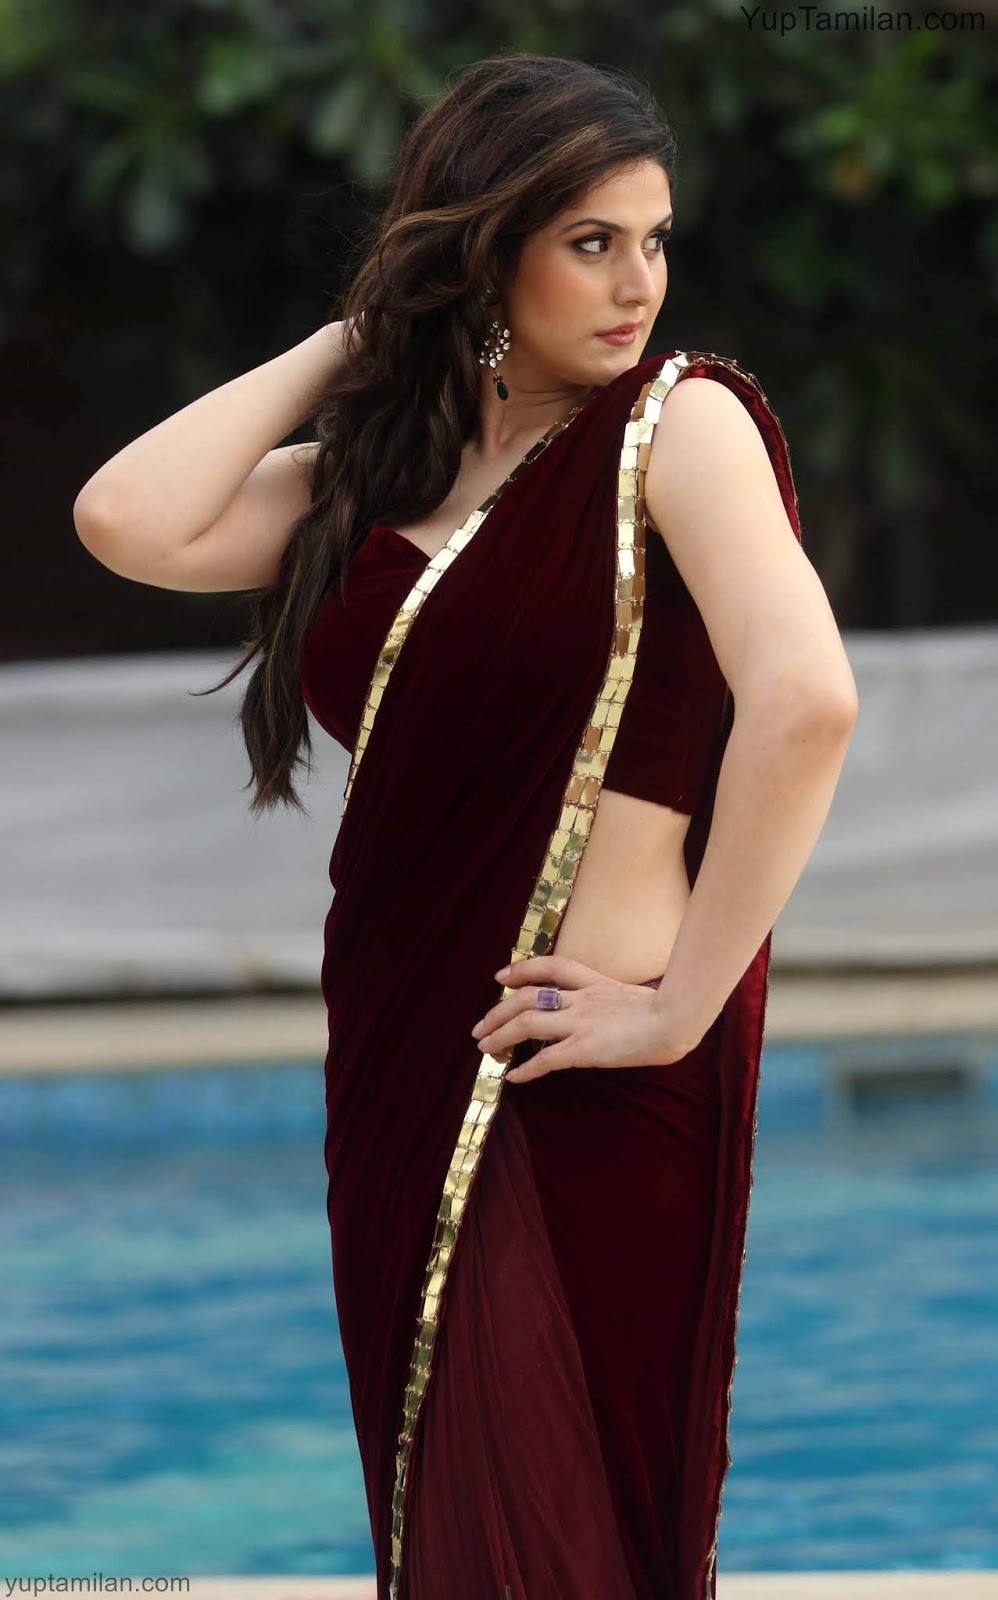 Zareen Khan hot Saree Photos-wearing Silk Saree Pictures,Images